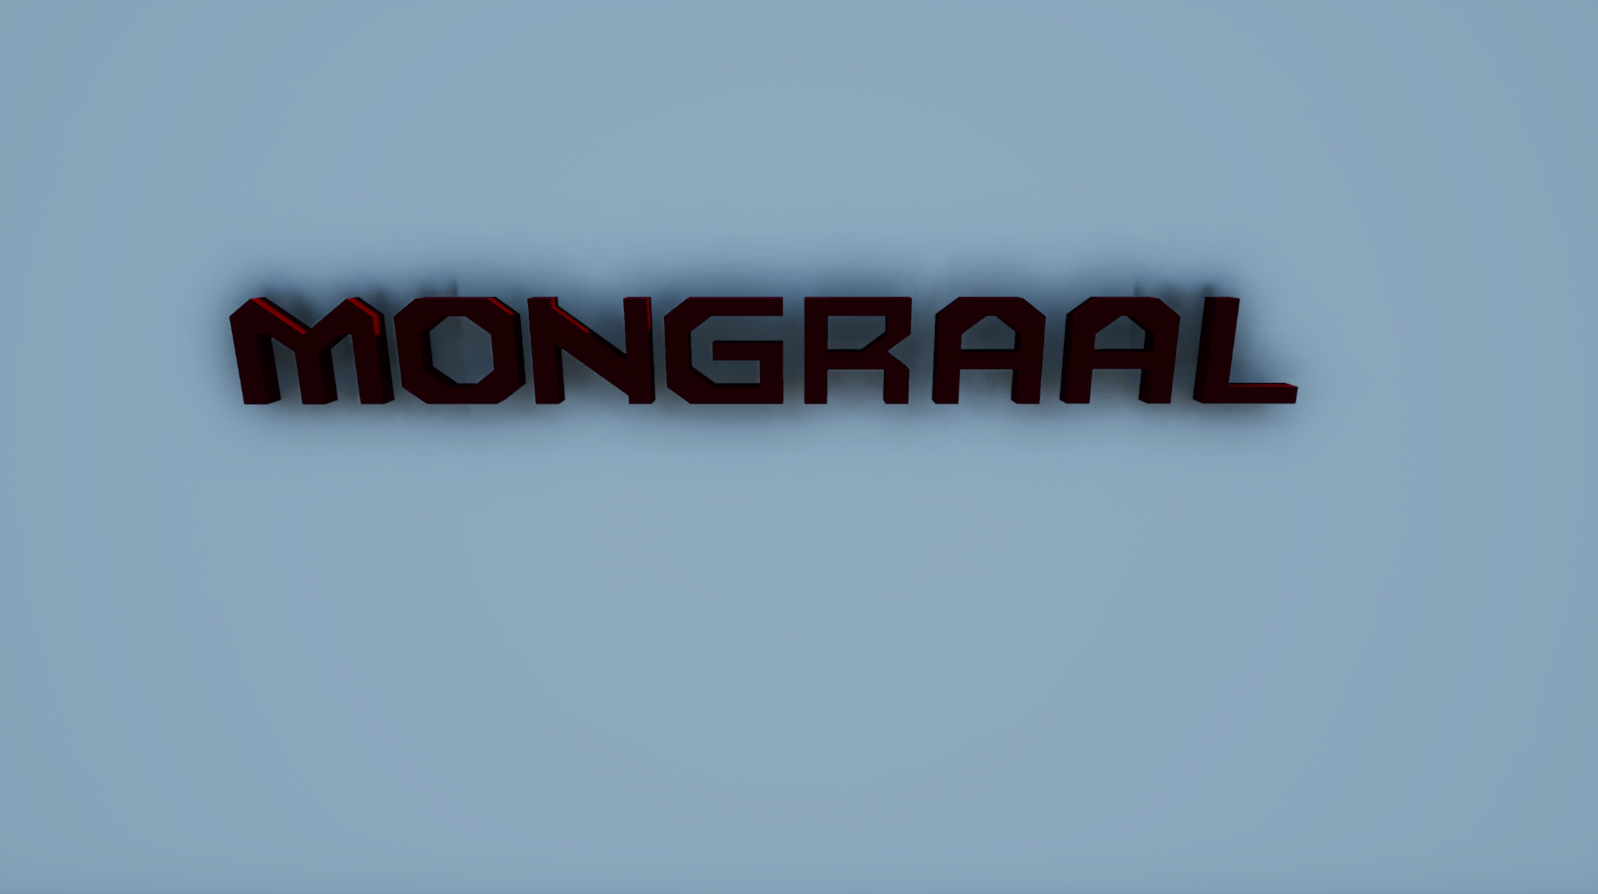 Mongraal